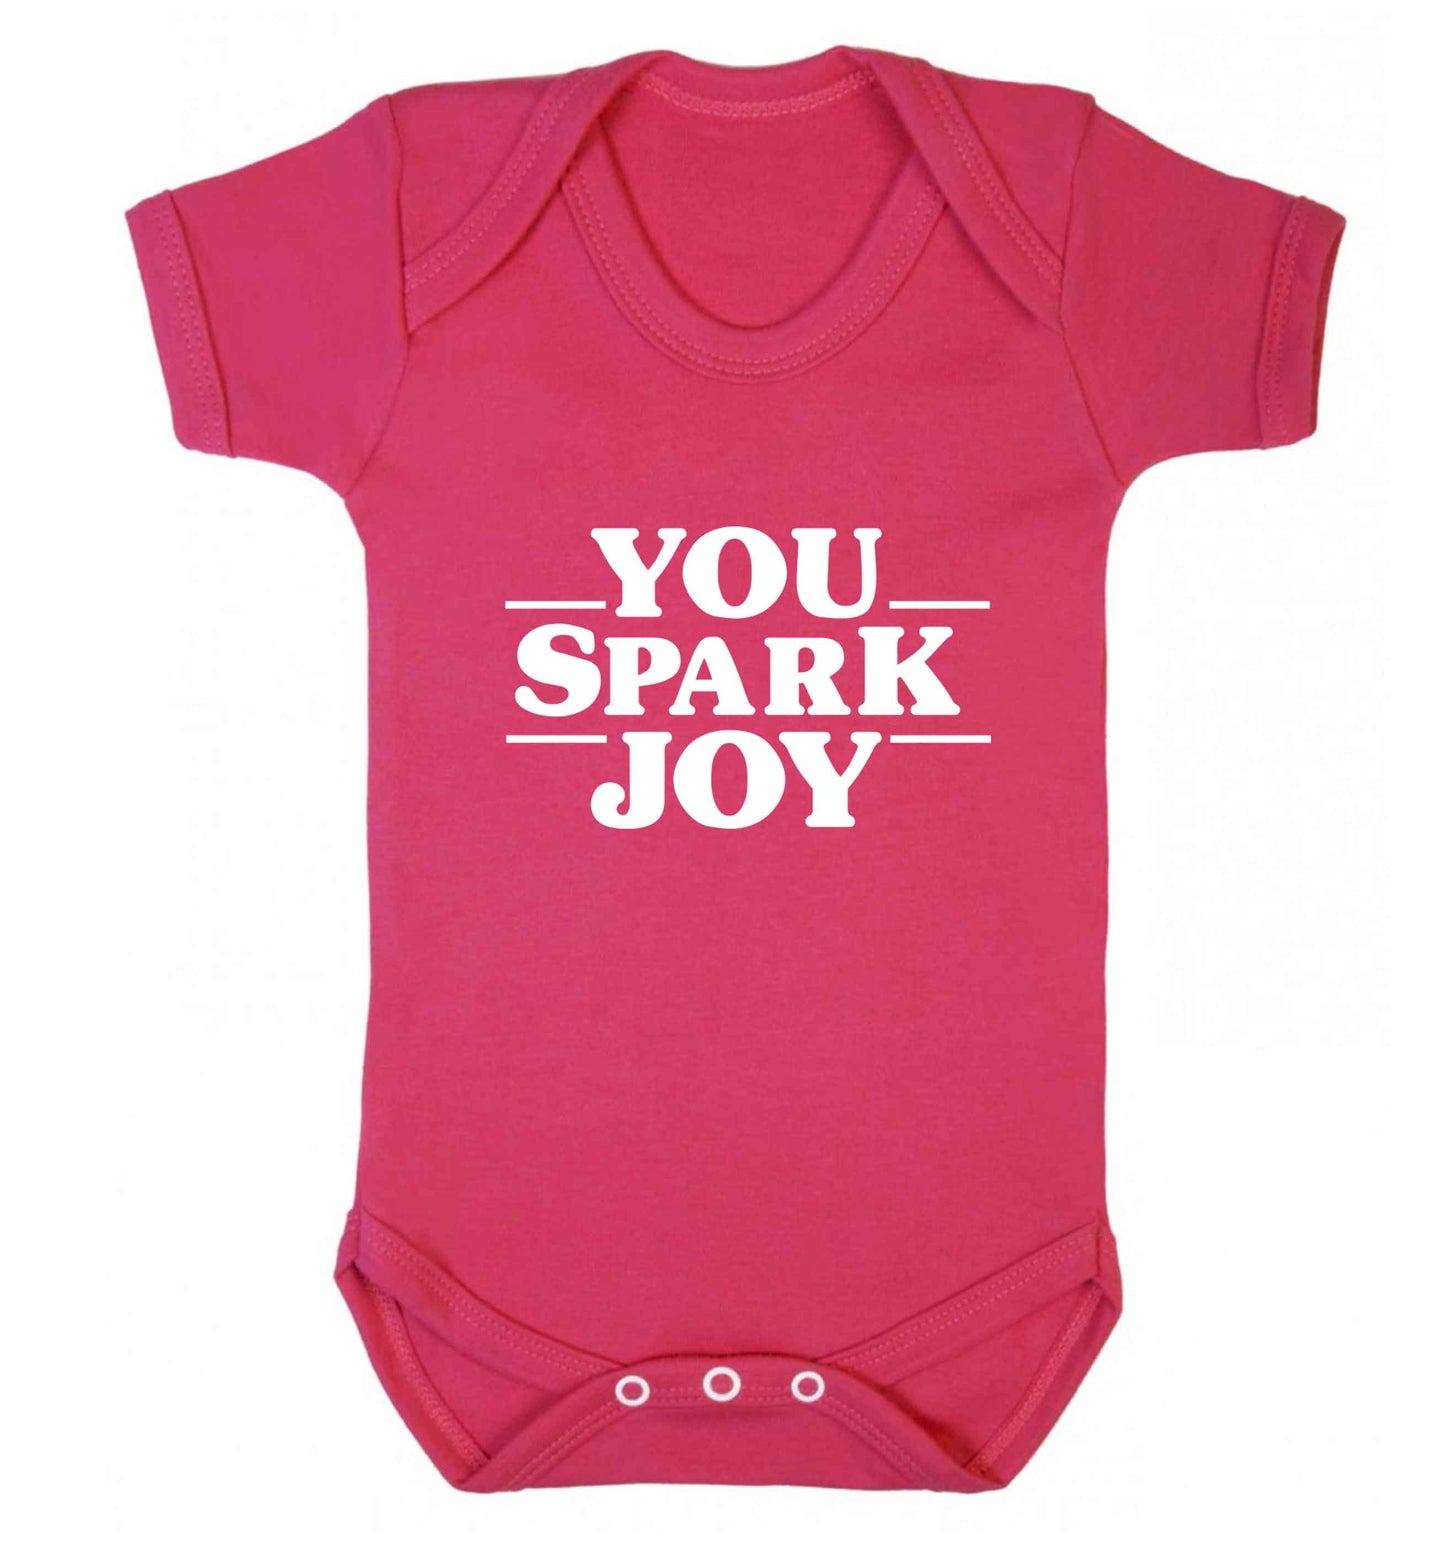 You spark joy baby vest dark pink 18-24 months